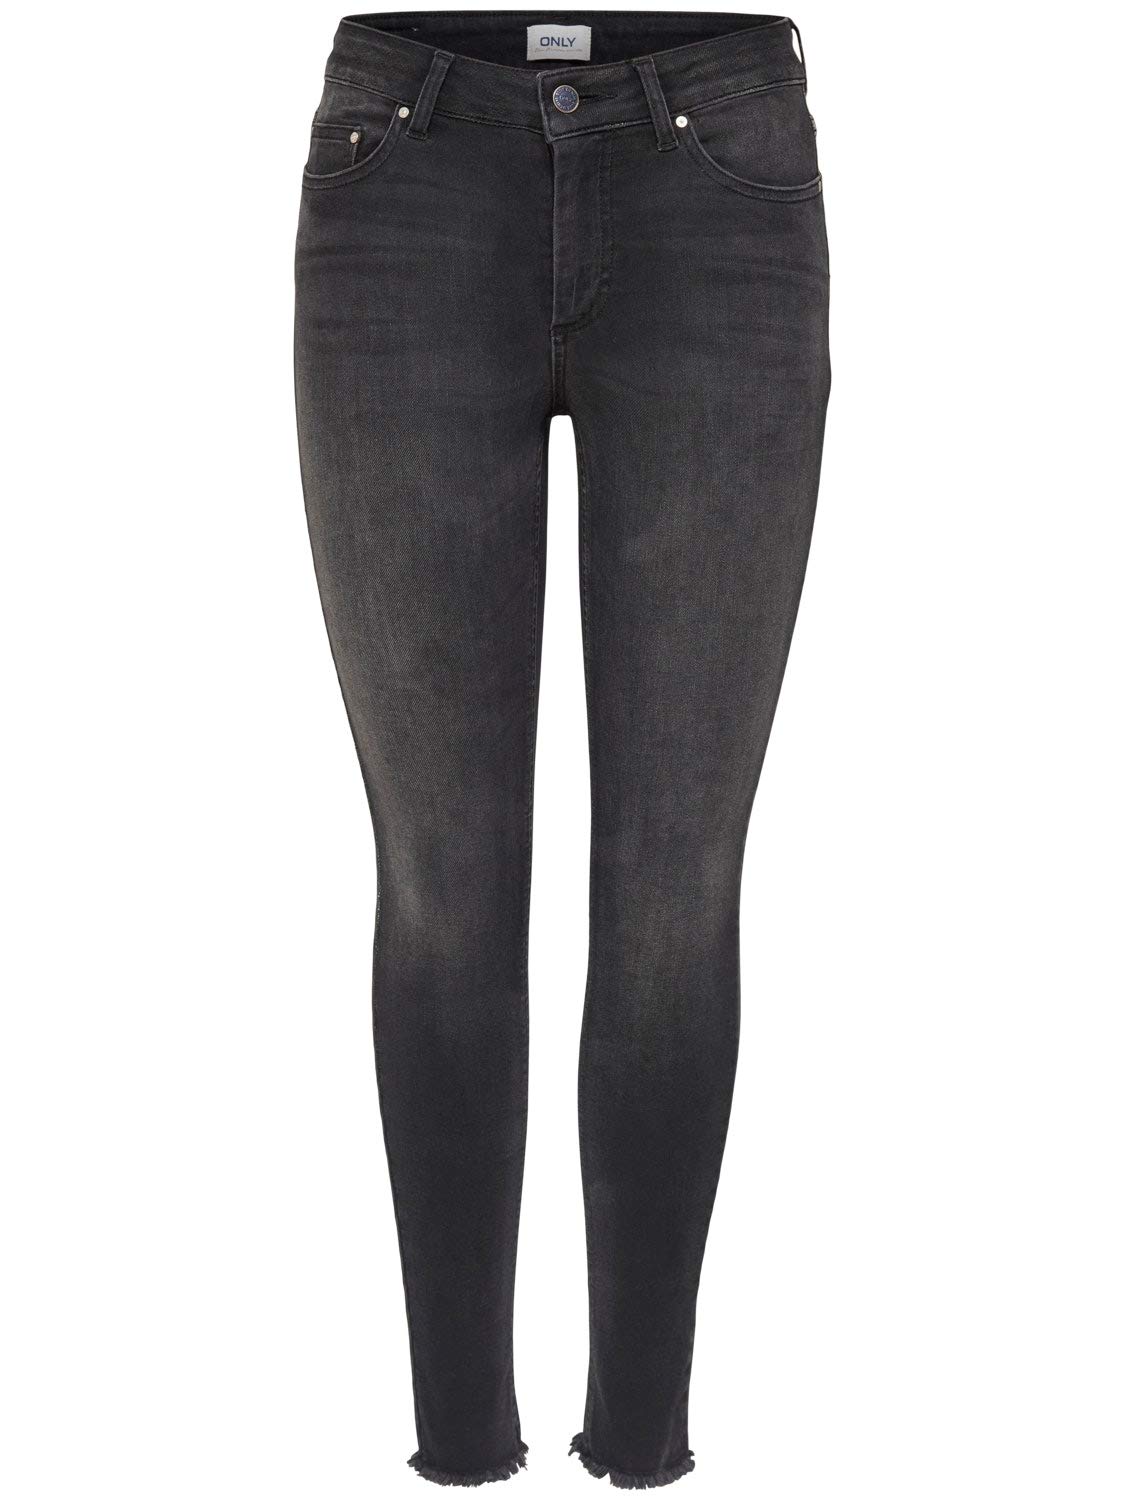 ONLY Damen Blush Jeans, Black Denim, L/34. EU